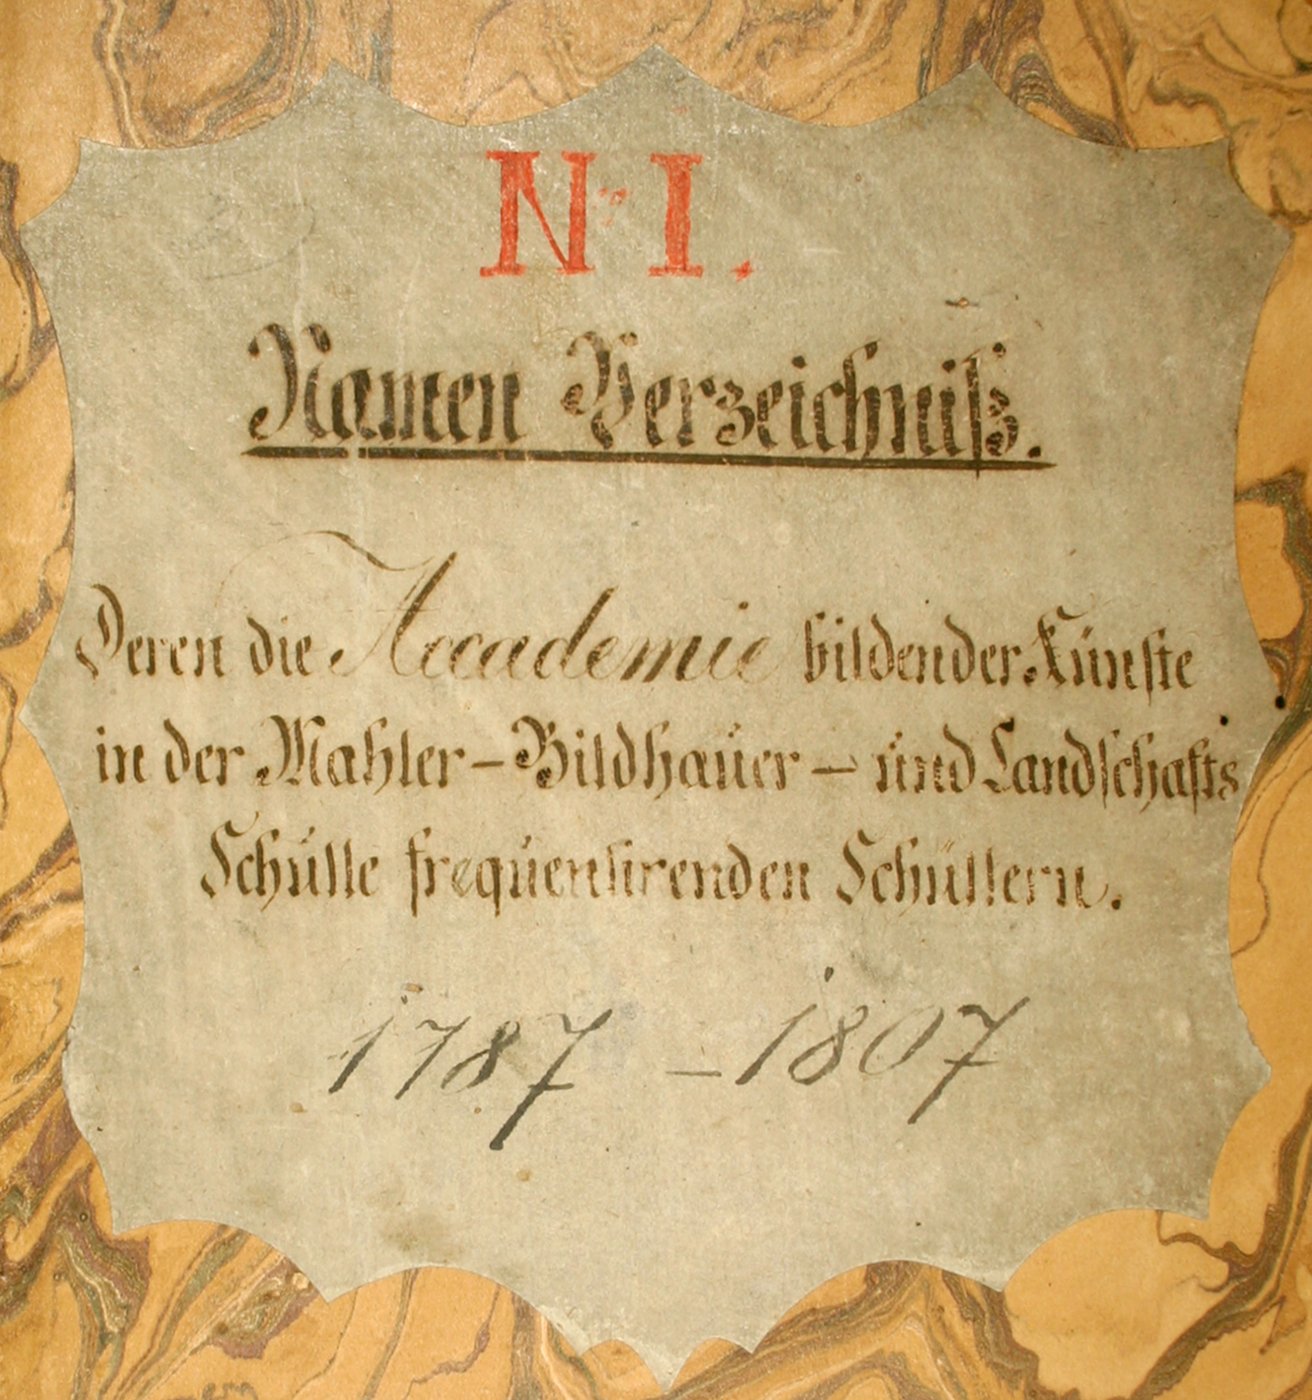 Umschlagblatt eines Matrikelbuchs, gebunden in gemusterten beige-gelbem Papier, darauf ein Etikett, handgeschrieben in Zierschrift Titel und Datum, braune Tinte auf Papier.